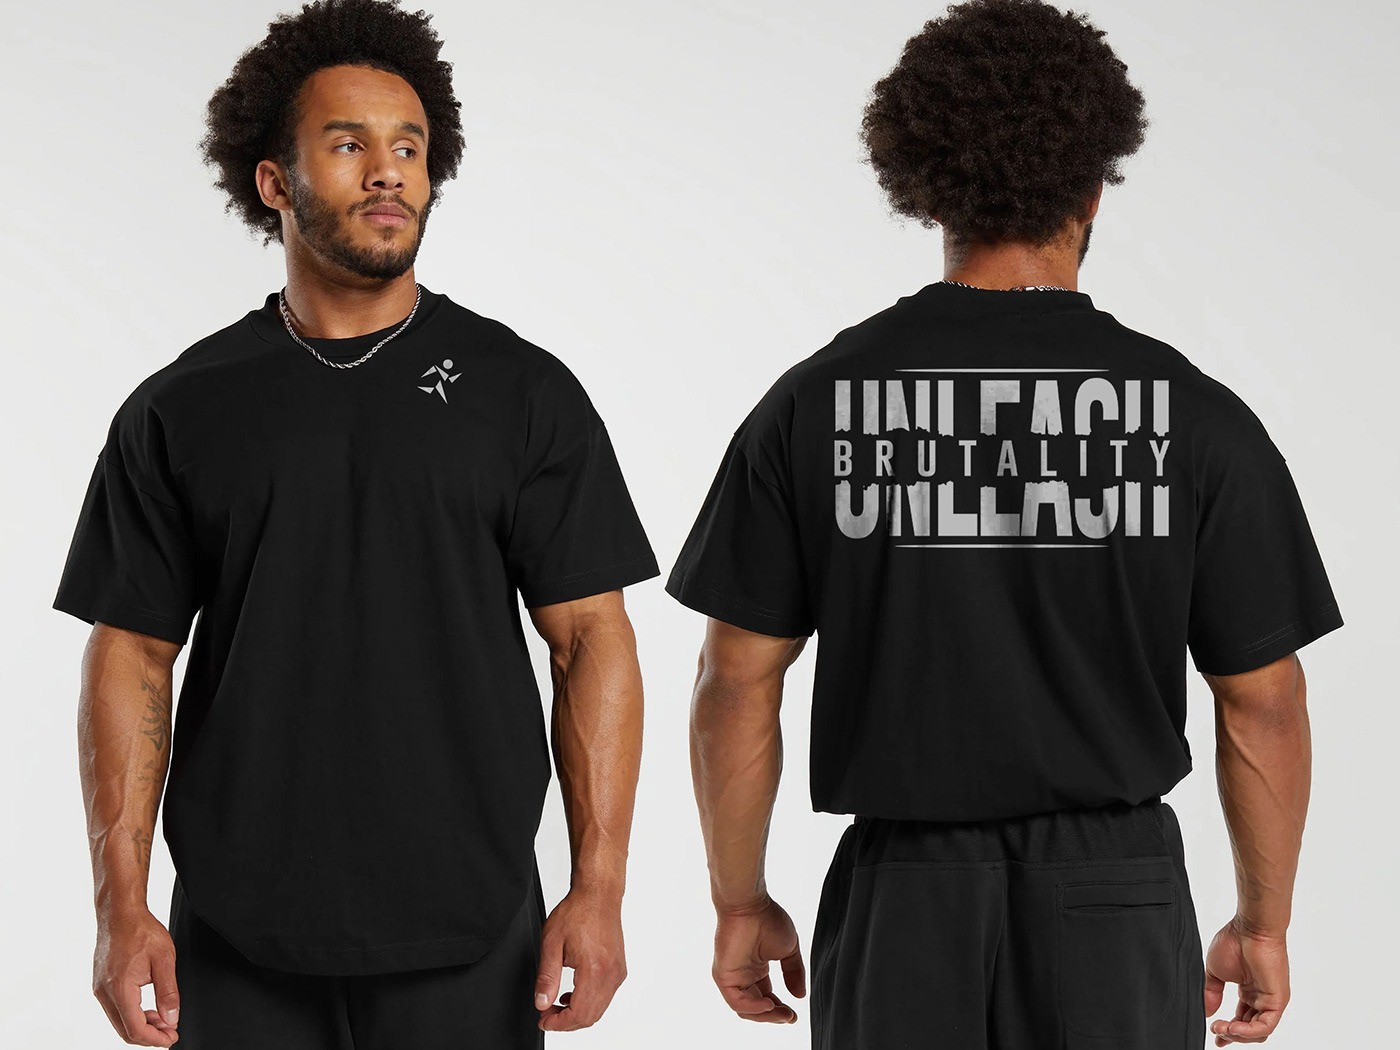 Gym T-shirt Design; Fitness T-shirt Design; Workout tshirt; T-shirt Design